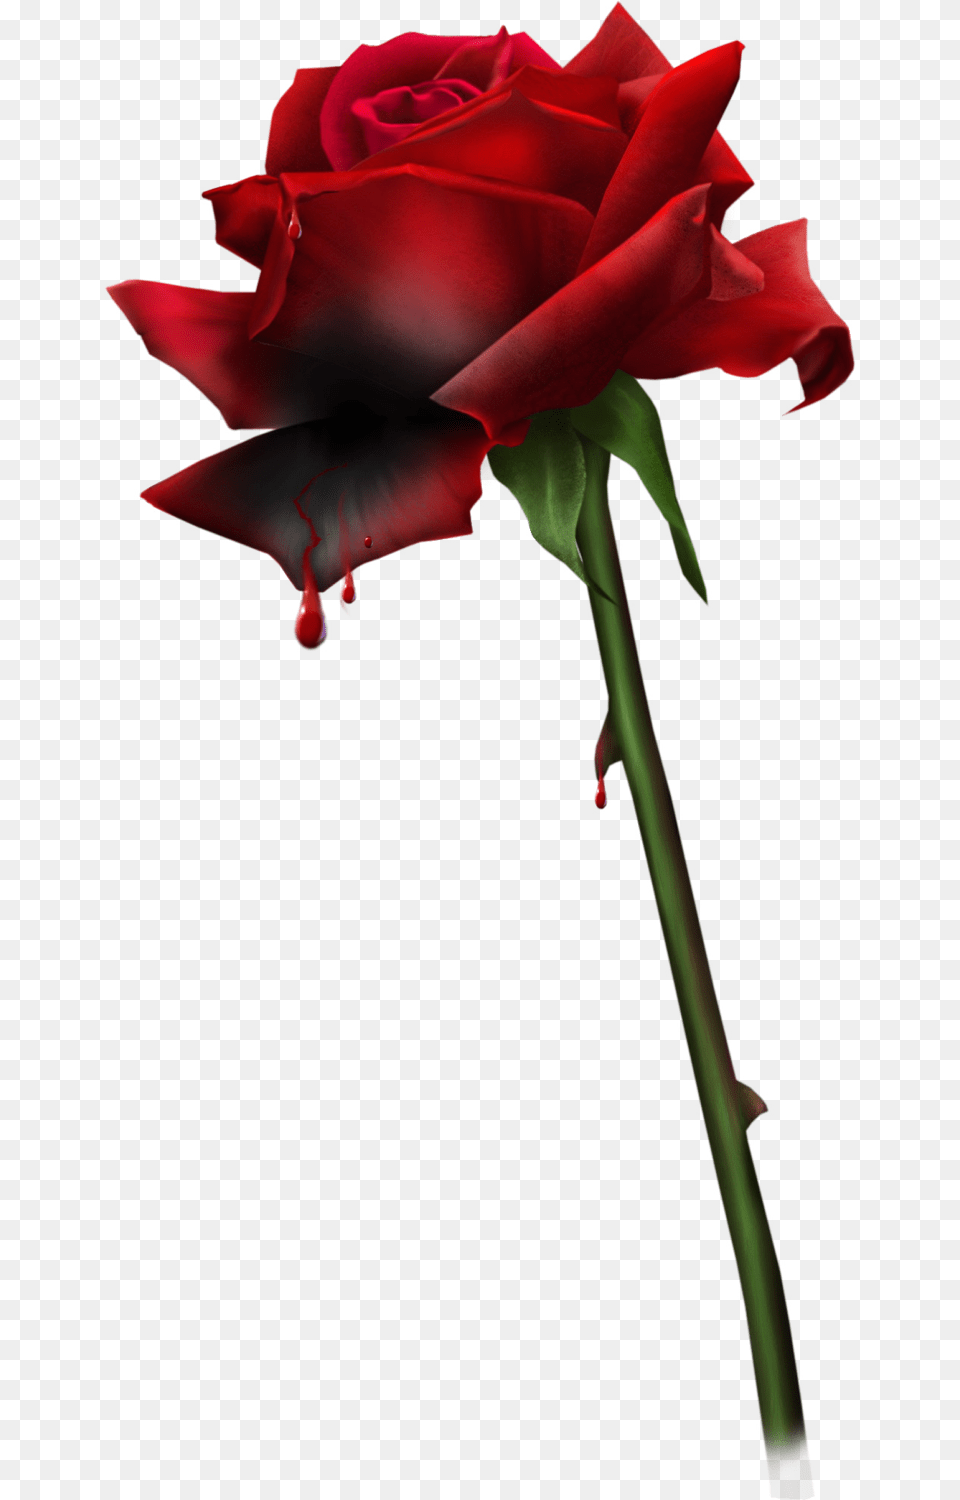 Blood Bloody Rosebloody Rosesgothgoth Aestheticroserosesred Kanayan Gl, Flower, Plant, Rose Free Transparent Png